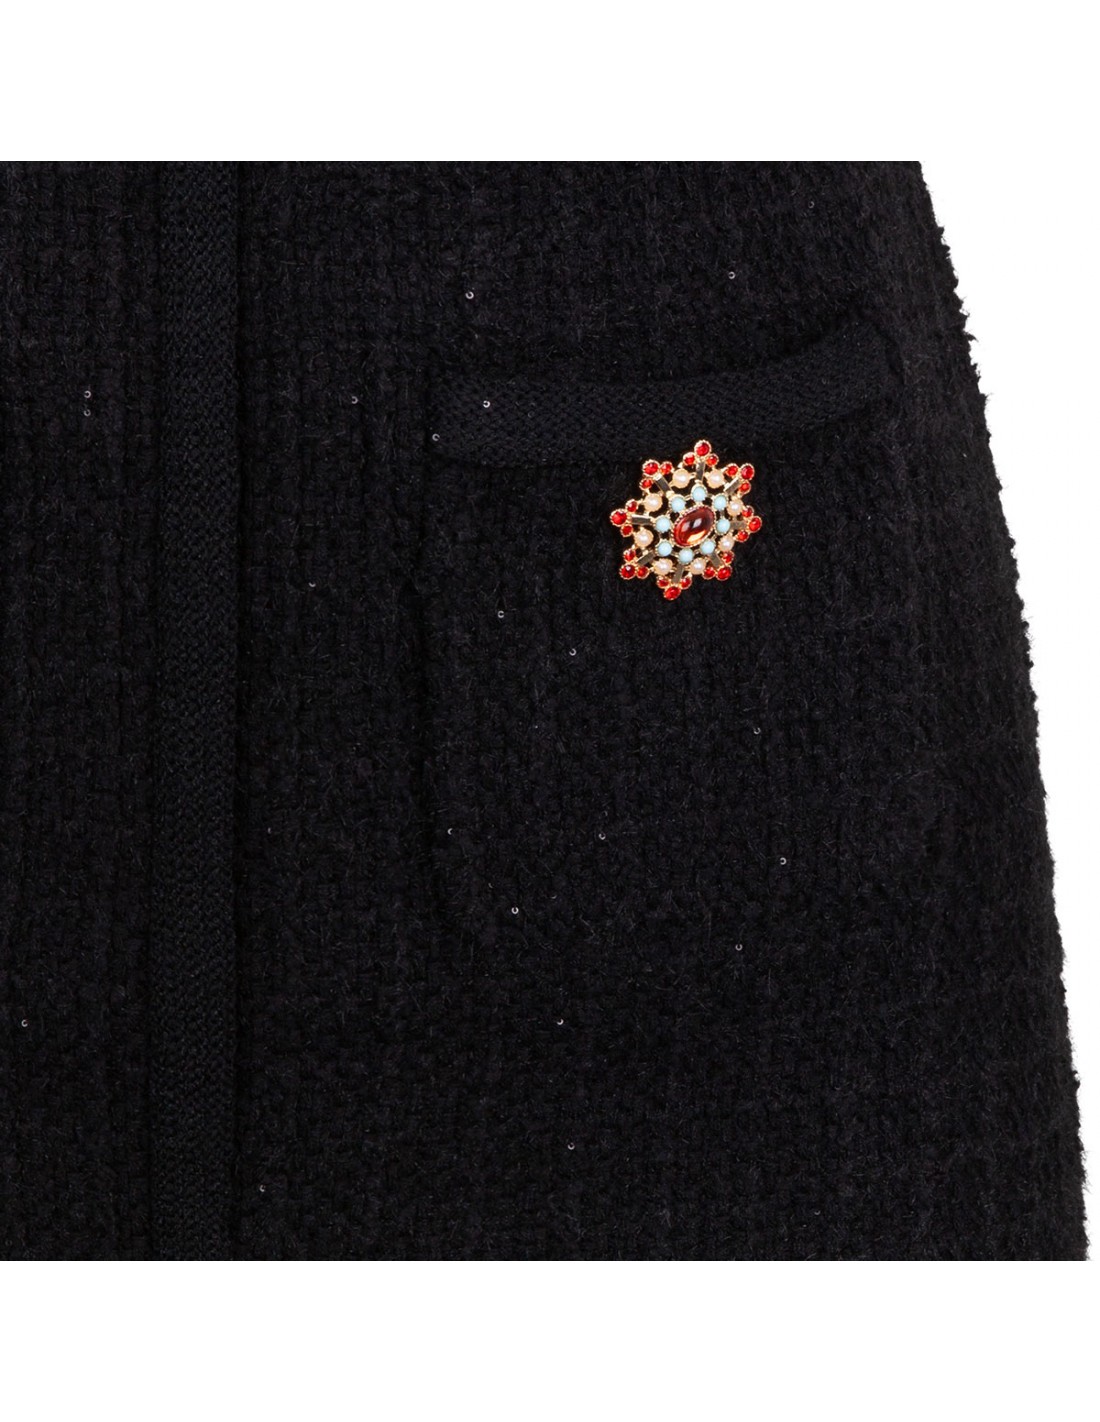 Black jewel button knit mini dress